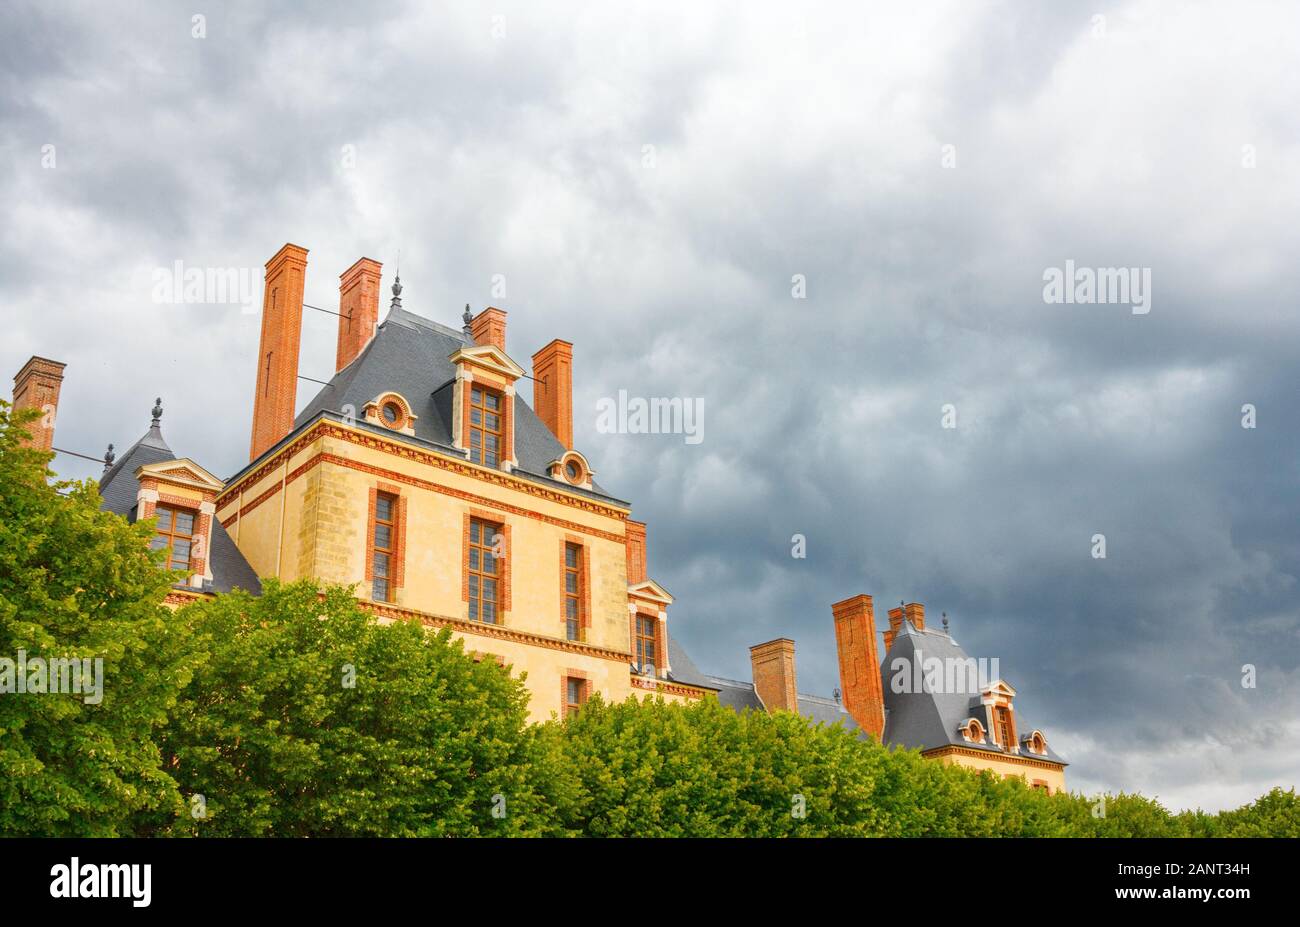 Vue sur le bâtiment Cour des bureaux, qui fait partie du Château de Fontainebleau (Palais de Fontainebleau), sous un ciel nuageux spectaculaire. France. Banque D'Images